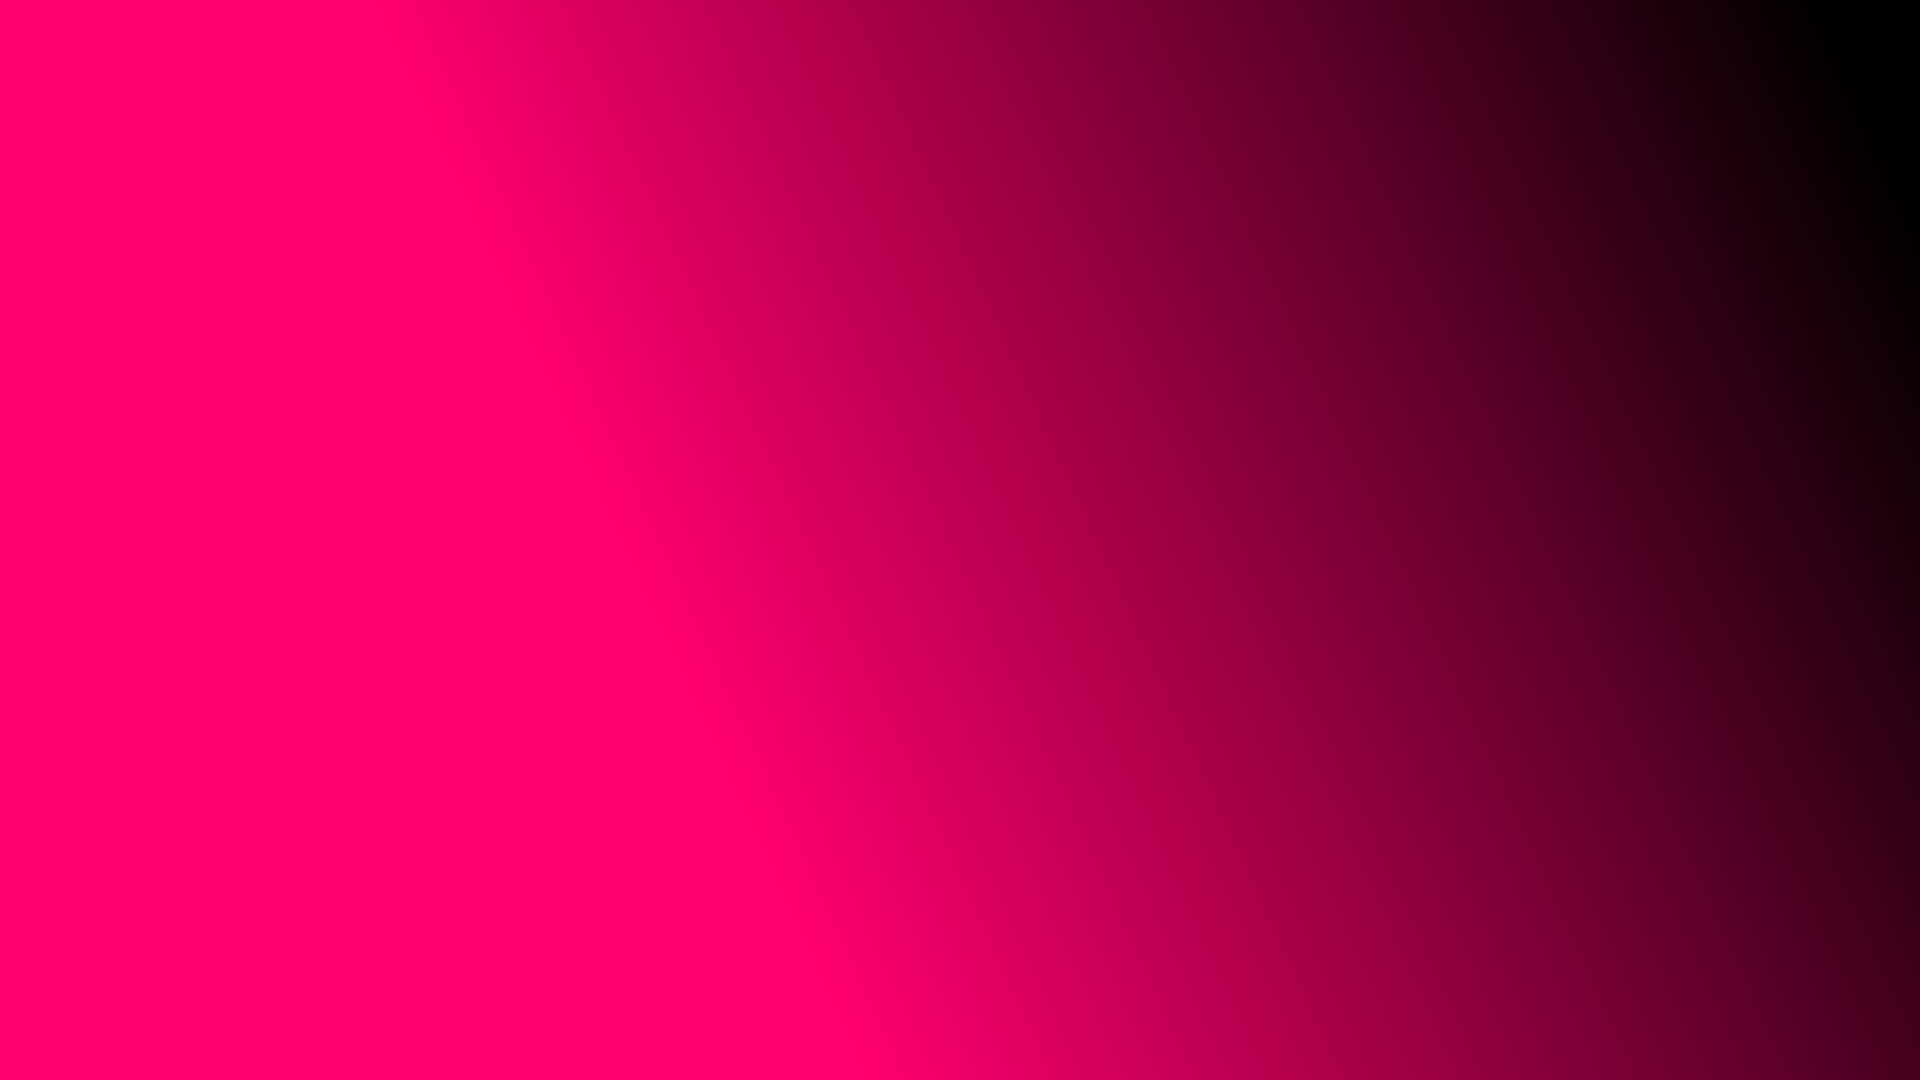 colore rosa wallpaper hd,rosso,rosa,viola,nero,viola